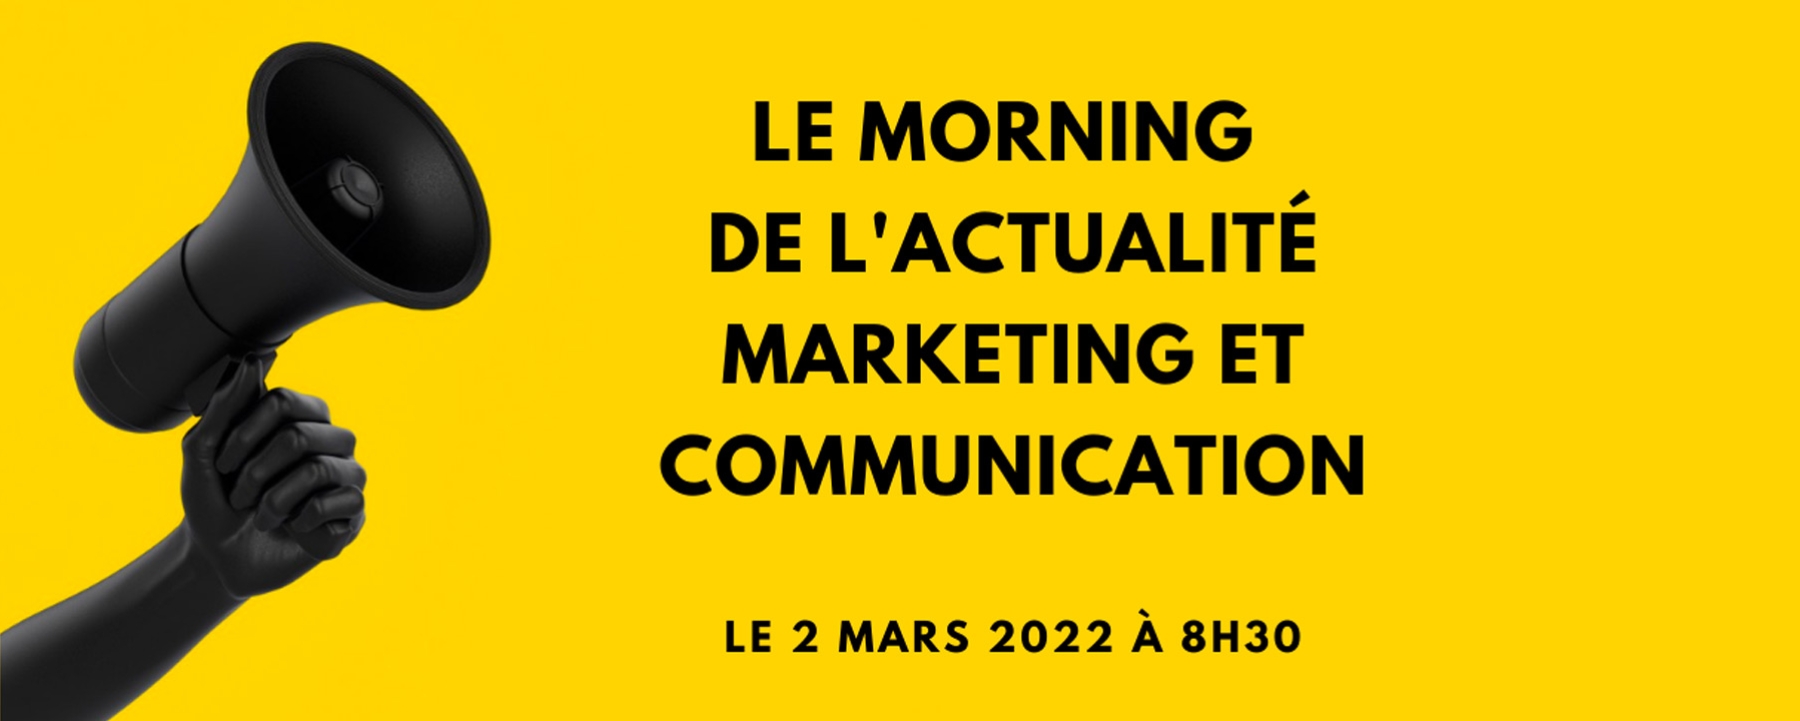 Le morning de l'actualité marketing et communication